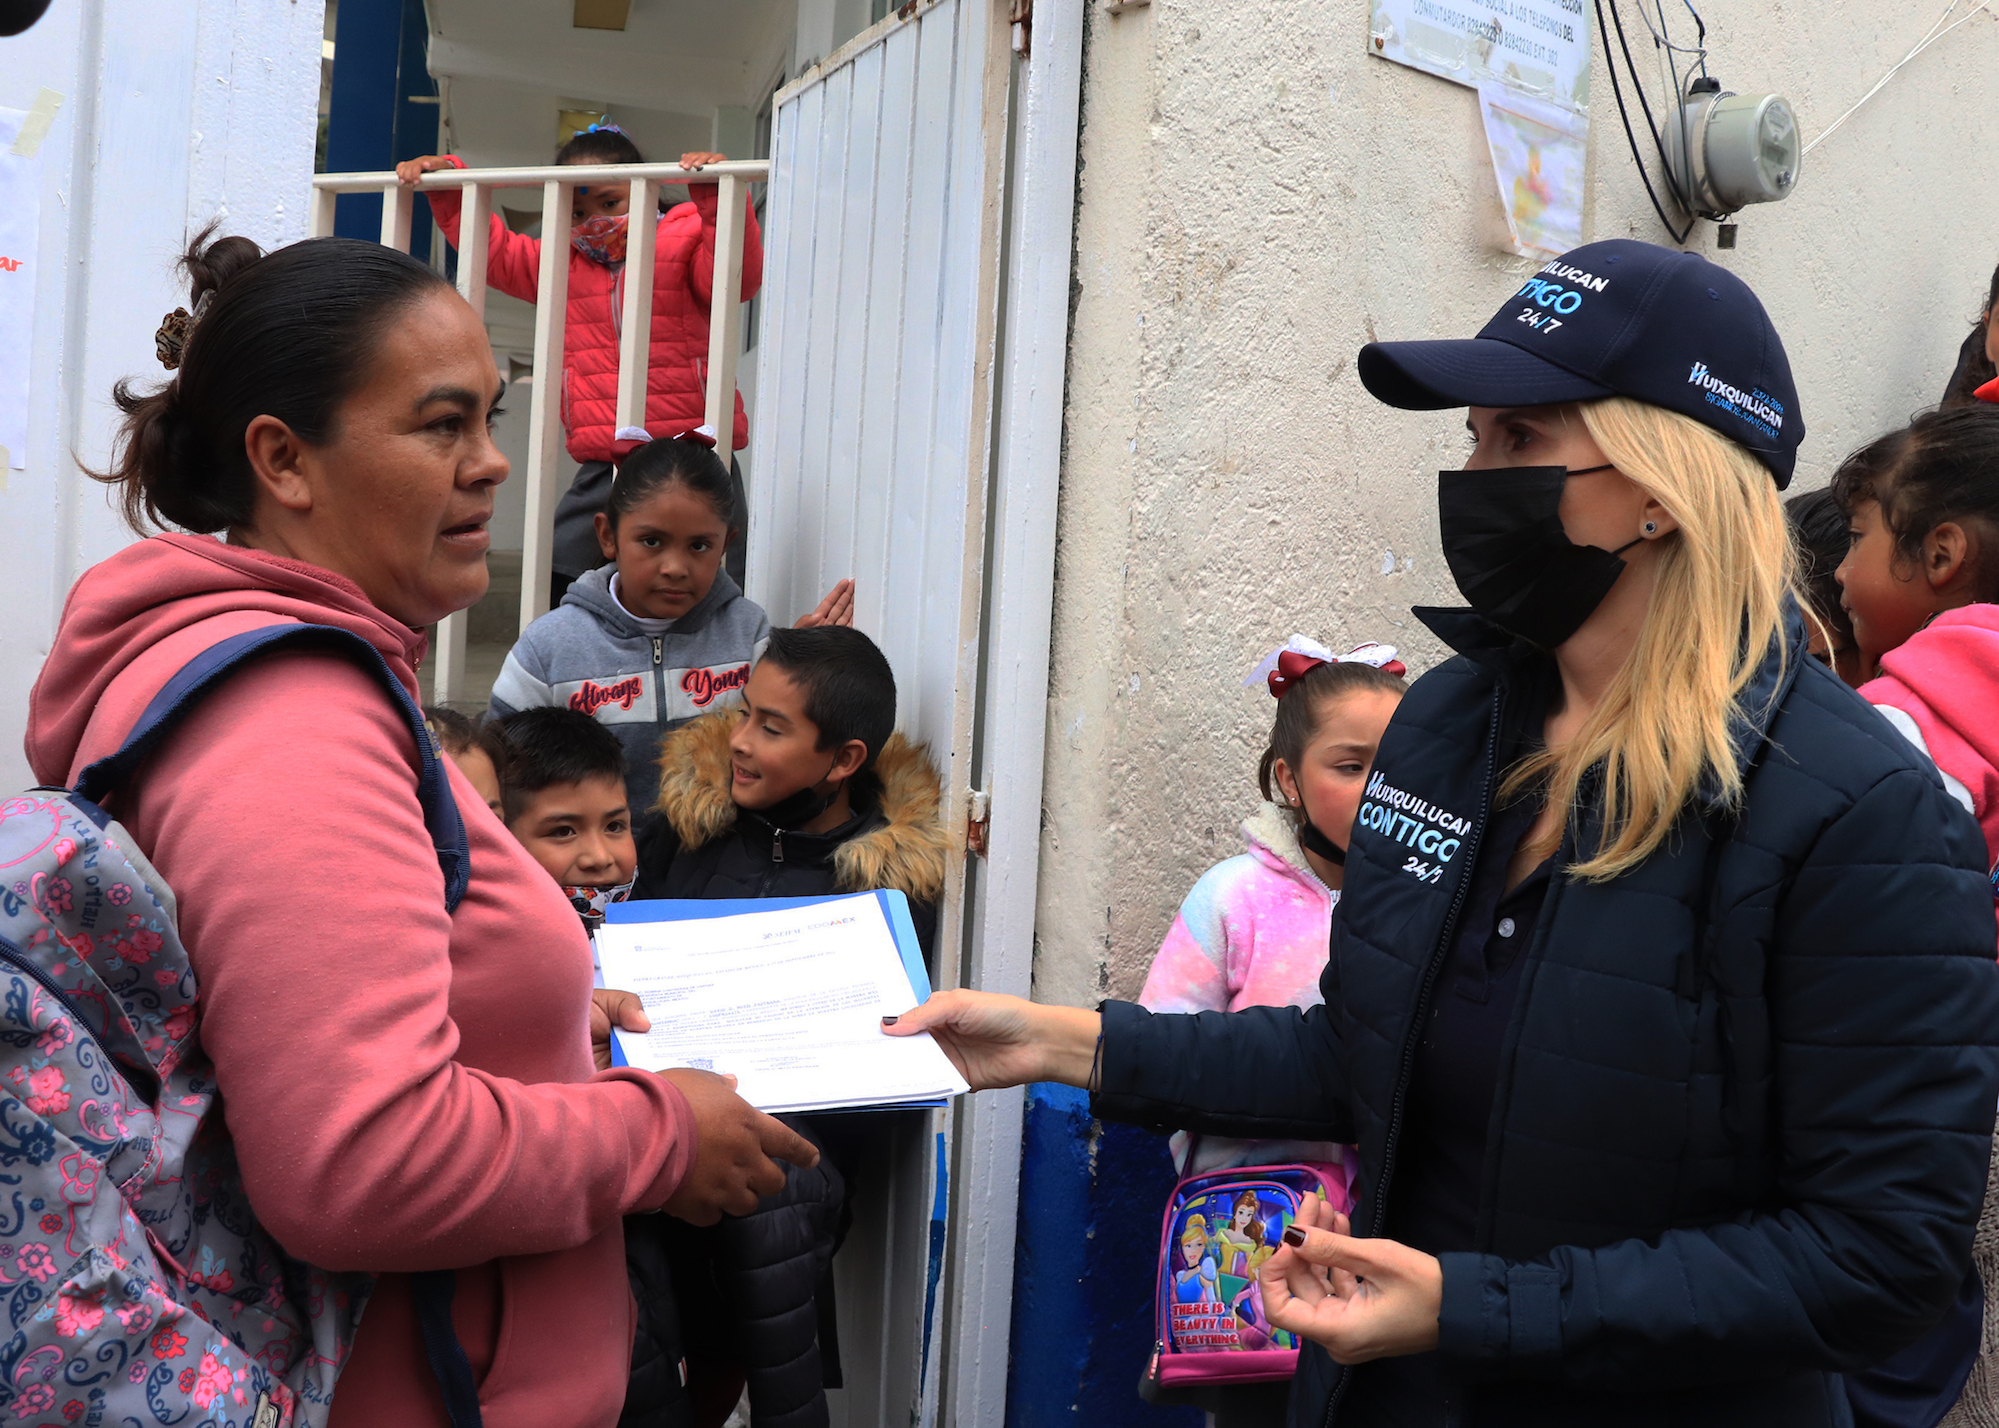 Romina Contreras recibe peticiones y entrega alimentos que mejoran la dieta de huixquiluquenses